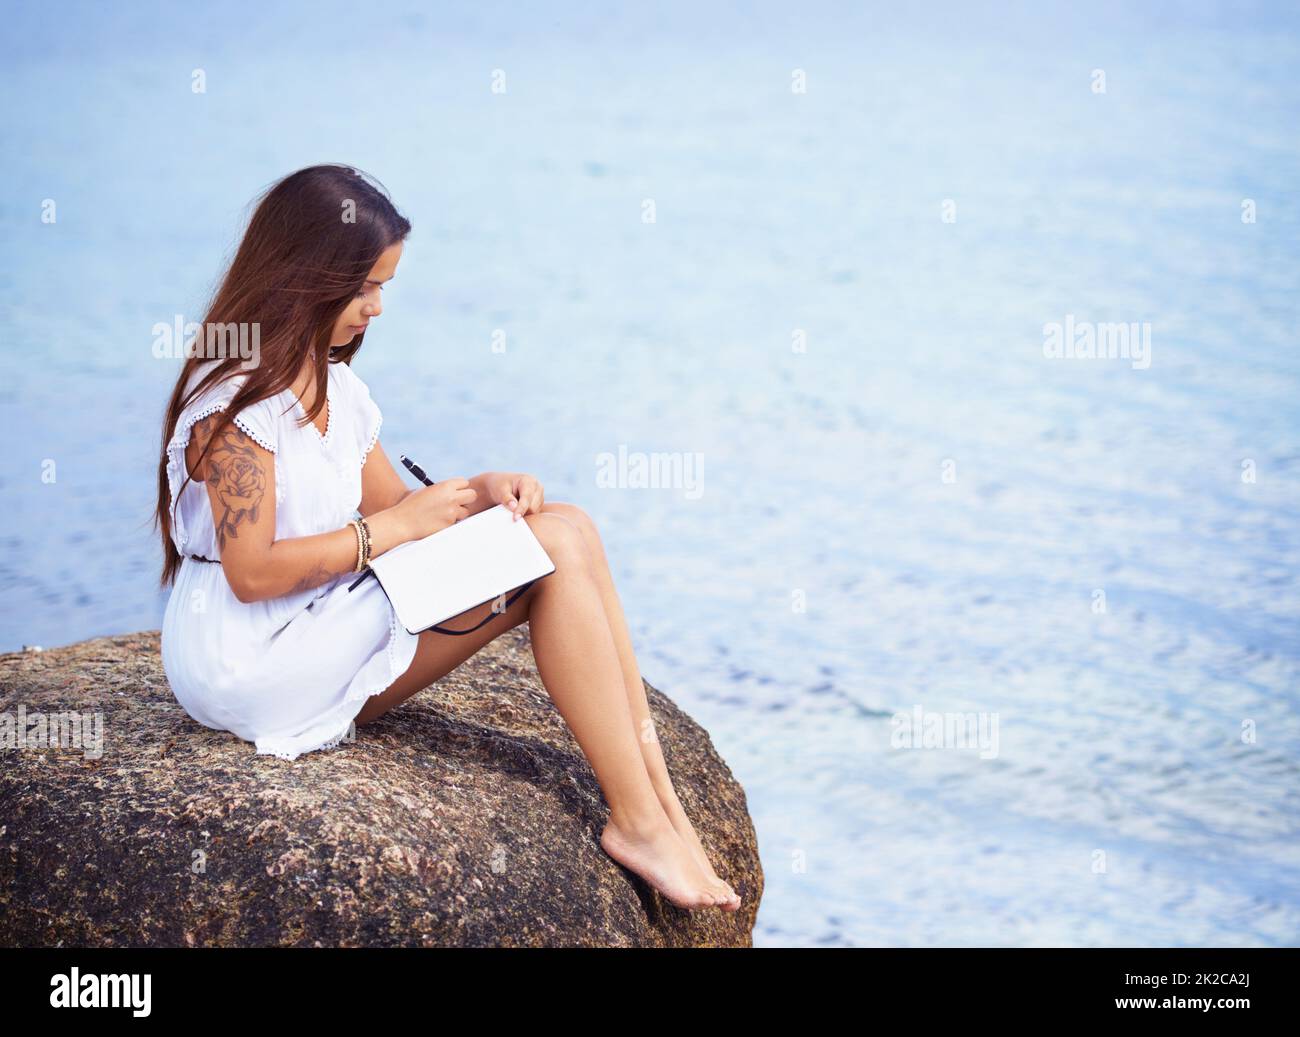 Tiefgehende Einblicke umgeben von ruhiger Natur. In voller Länge eine wunderschöne tätowierte junge Frau, die auf einem Felsen sitzt und in einem Tagebuch schreibt. Stockfoto